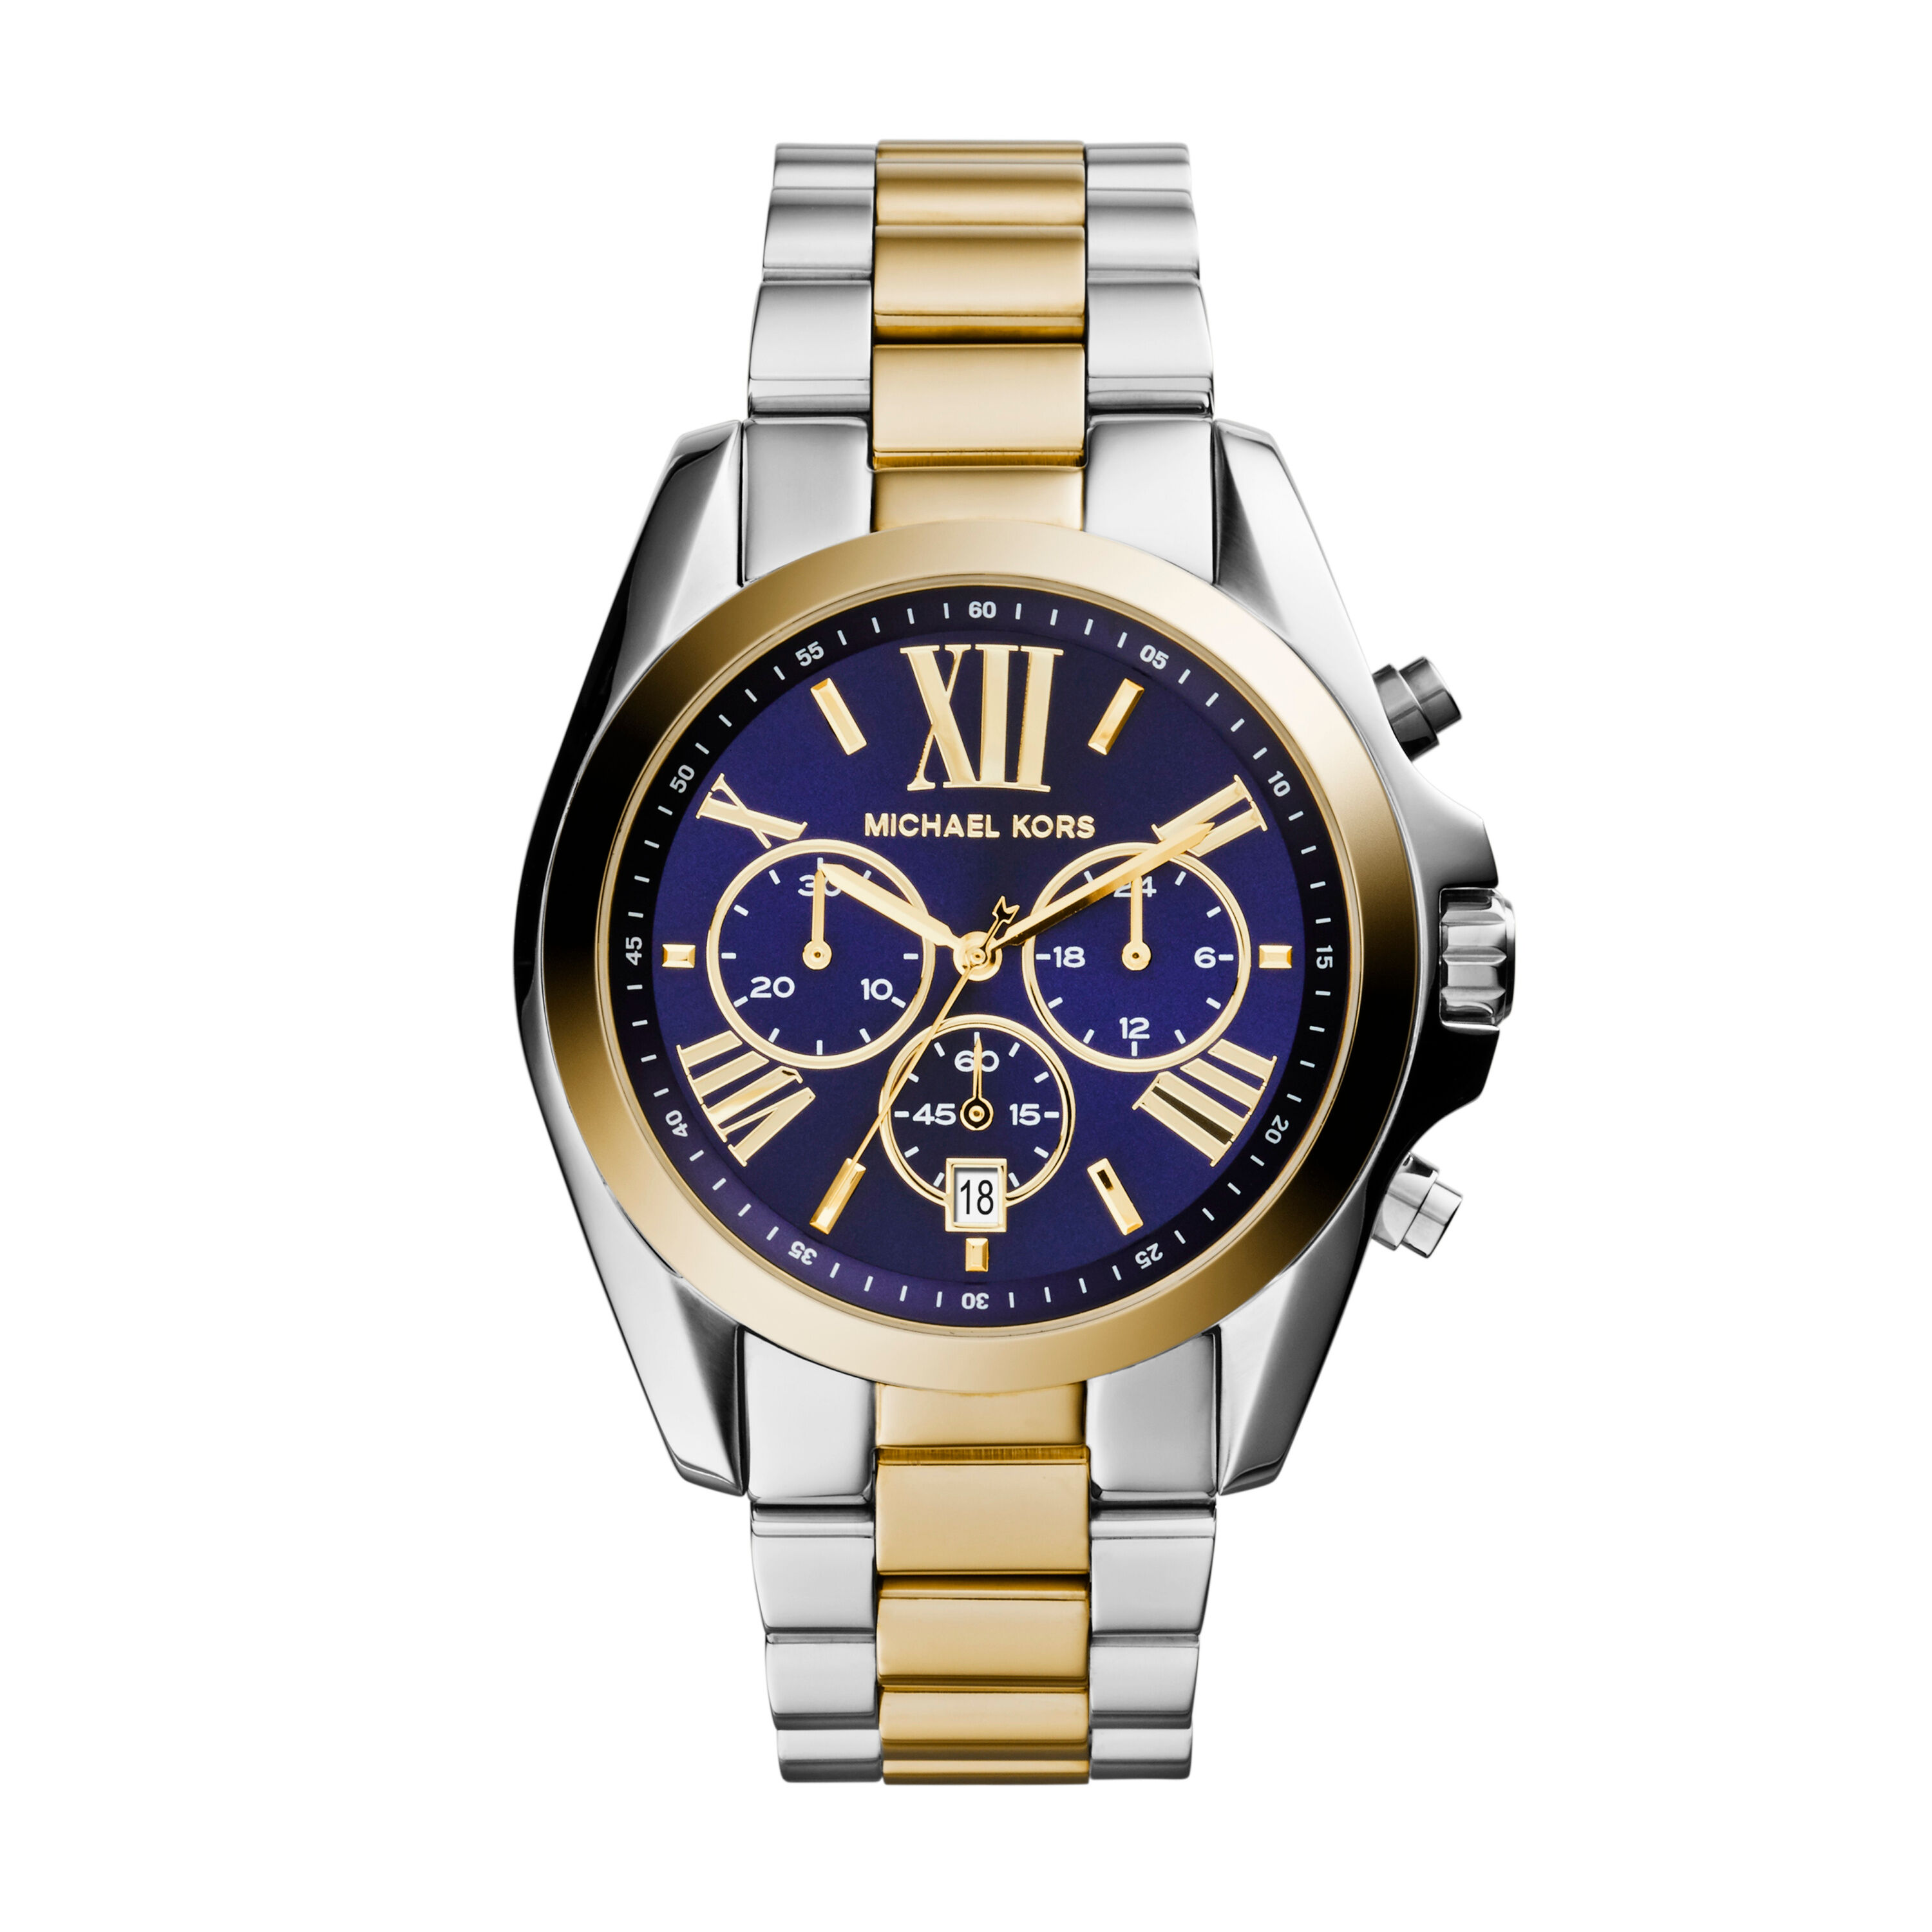 Michael Kors Horloges online kopen  Nieuwe collectie  Zalando